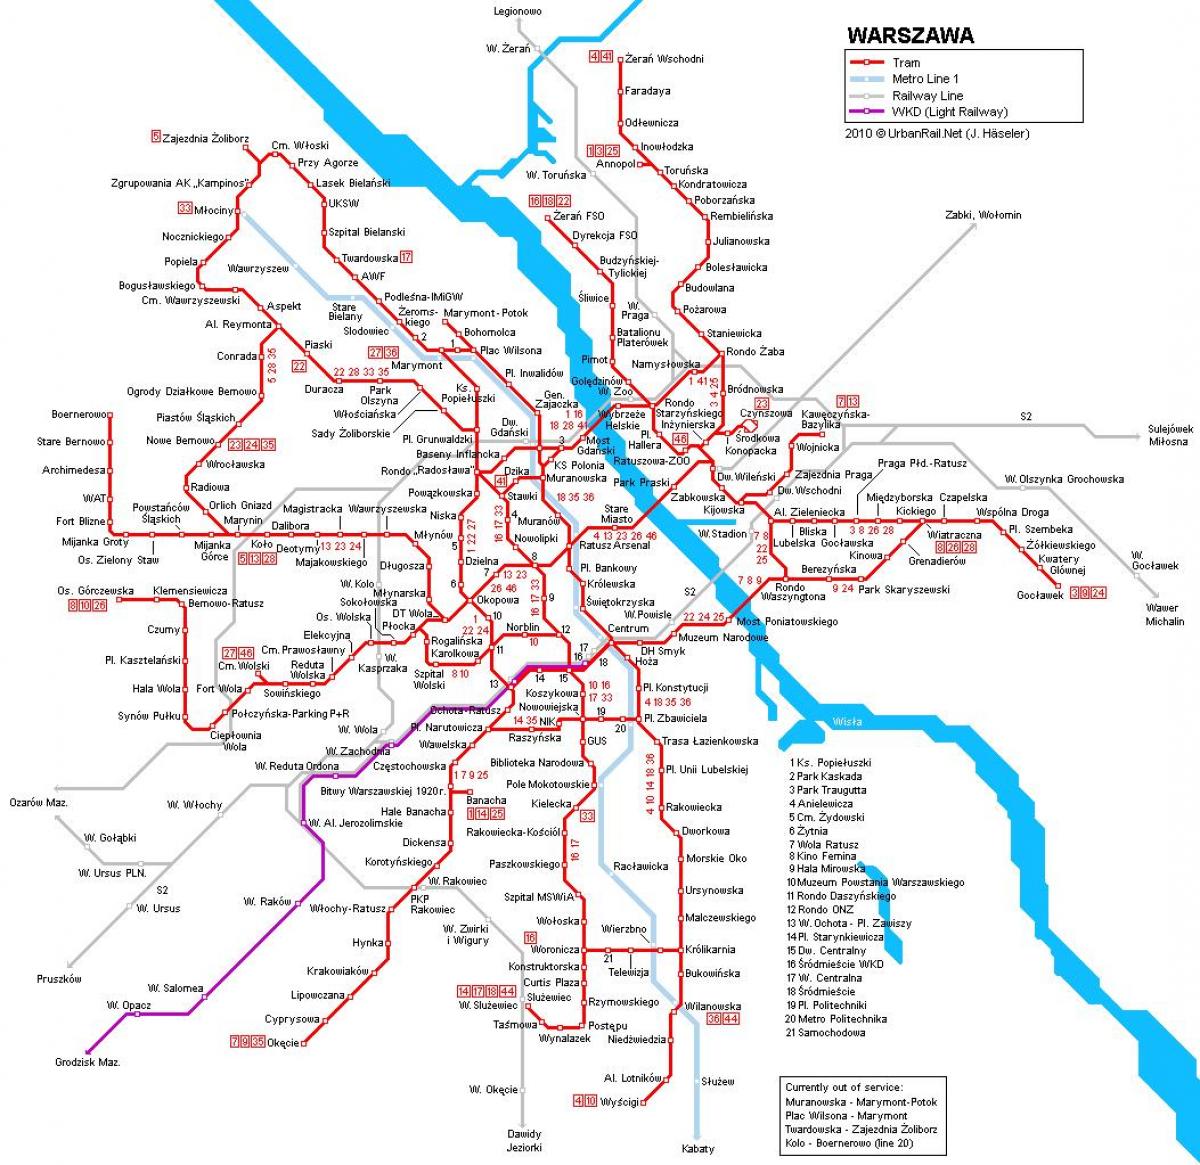 وارسا ٹرین کا نقشہ